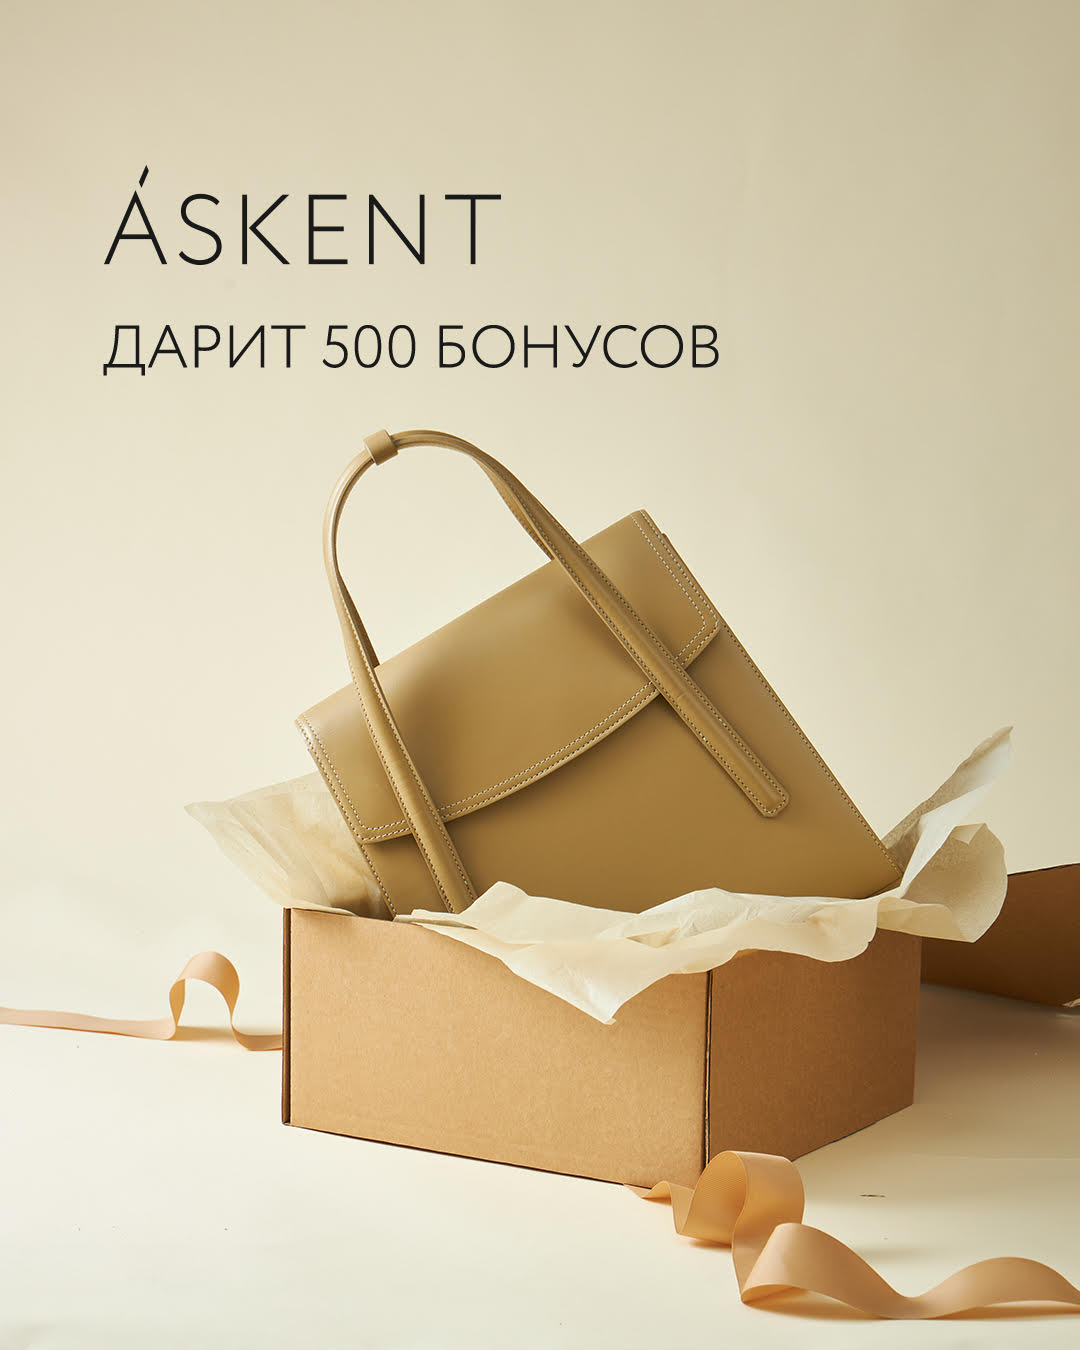 ASKENT дарит 500 бонусов на первую покупку с 10 по 26 декабря.